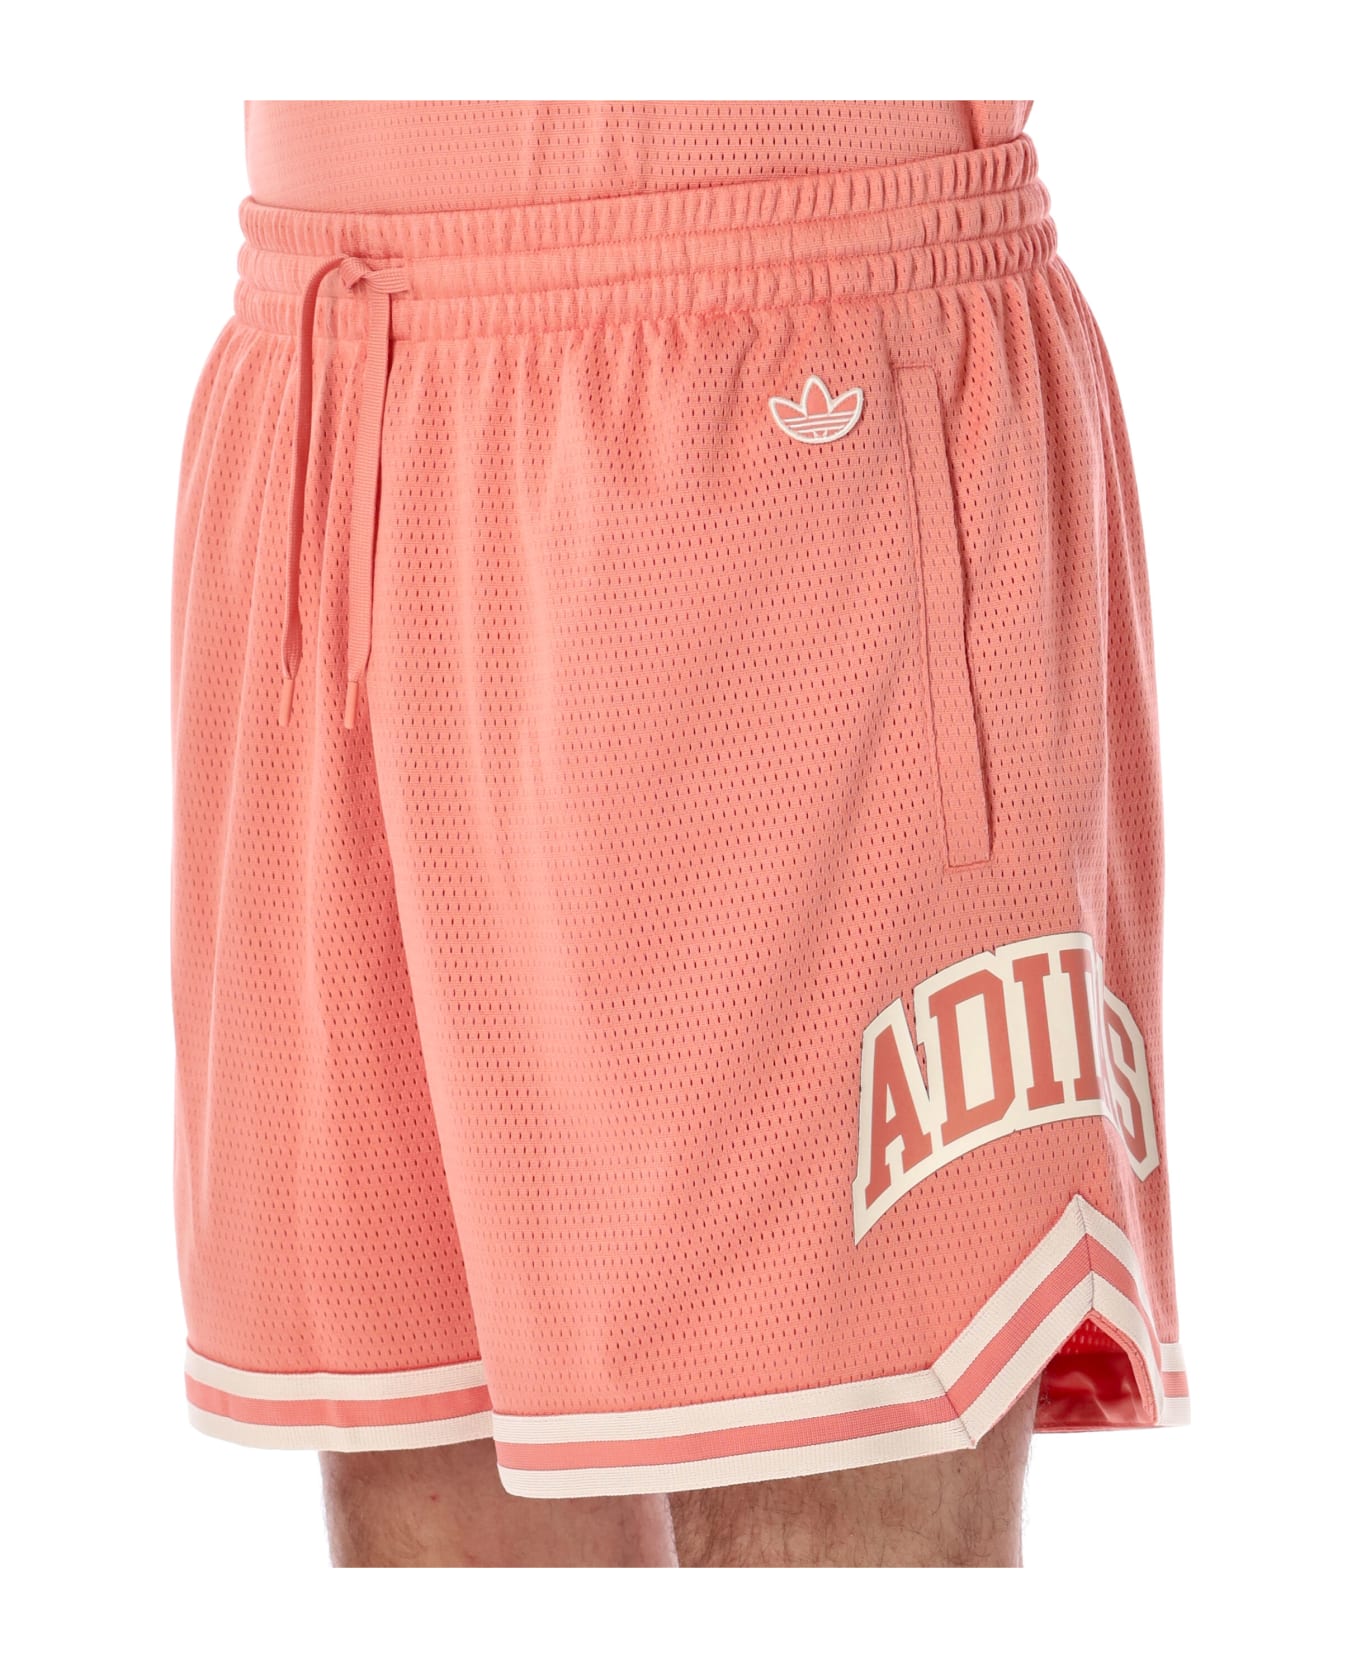 Adidas Originals Vrct Tank Shorts - PINK